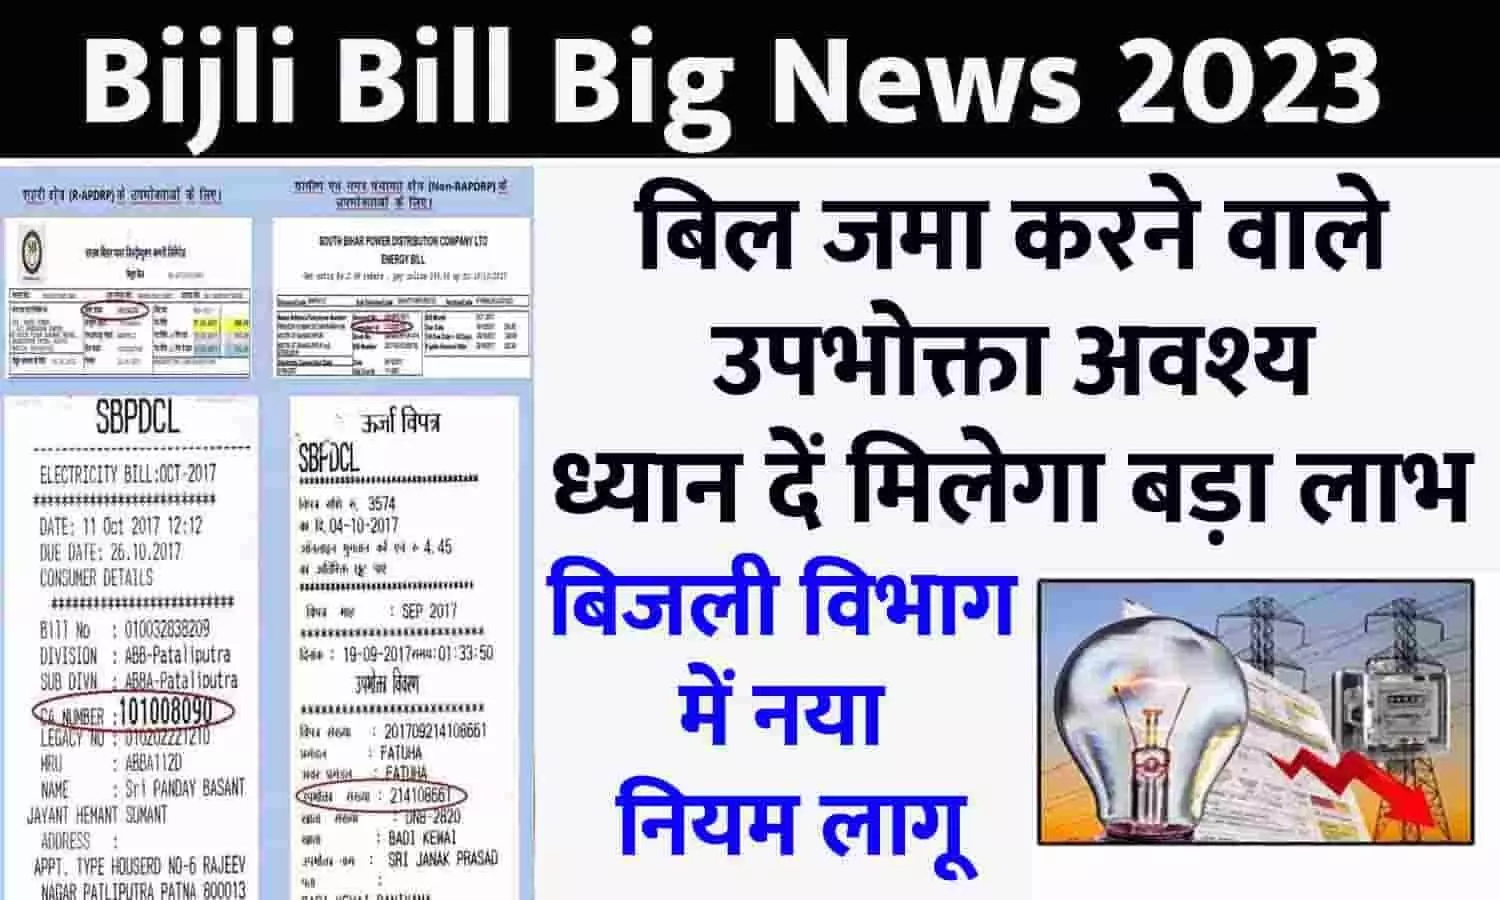 Bijli Bill Big Alert 2023: बिजली विभाग में नया नियम लागू, बिल जमा करने वाले उपभोक्ता अवश्य ध्यान दें मिलेगा बड़ा लाभ